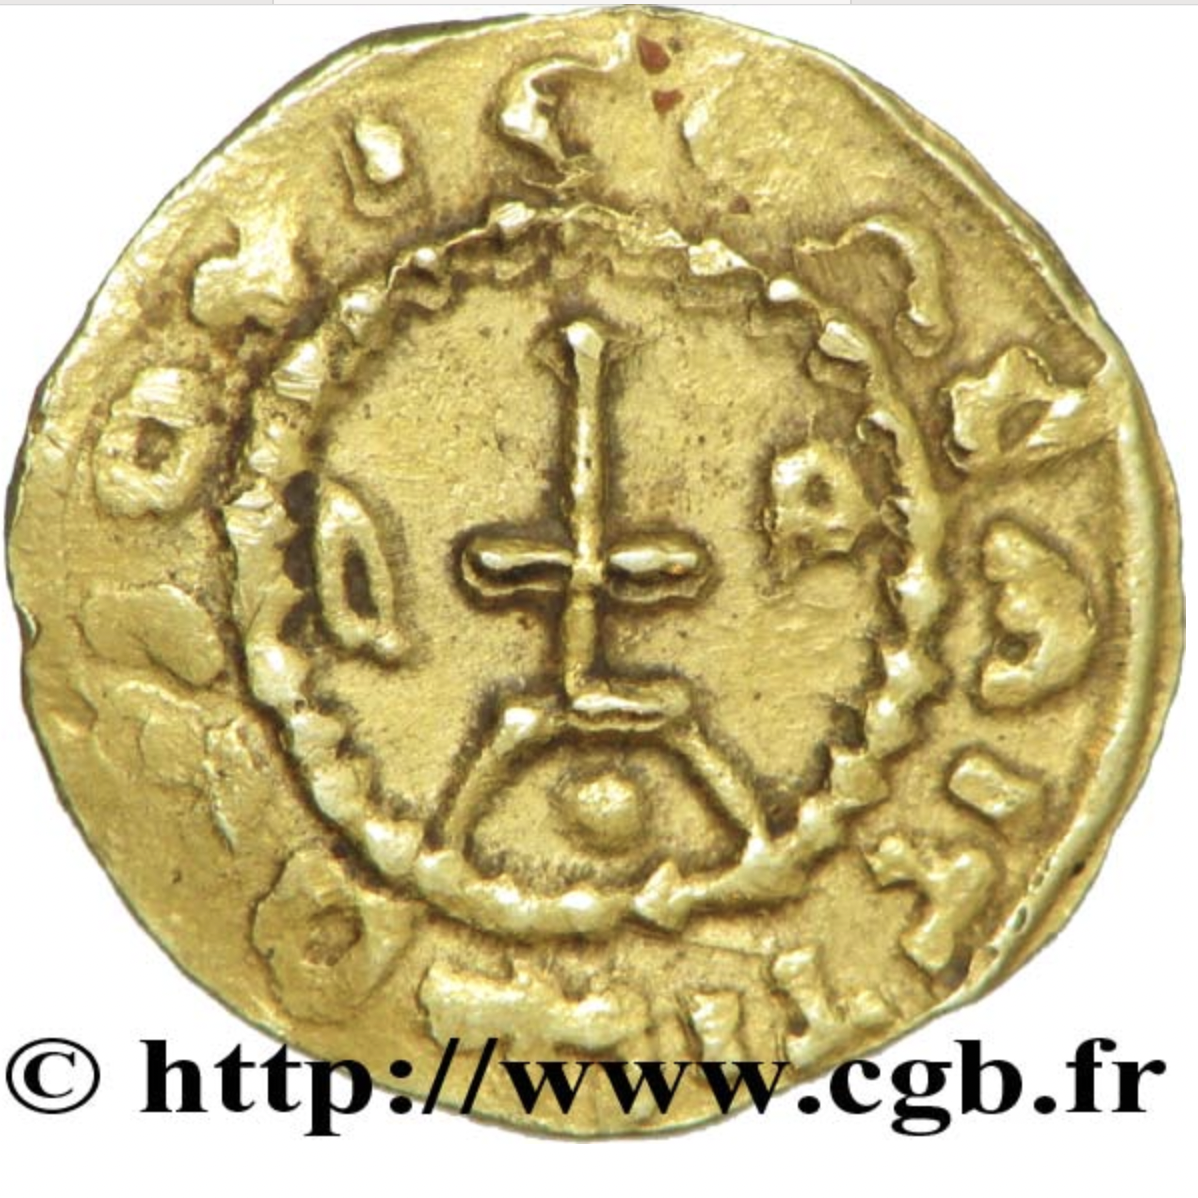 R DIEUZE - Triens du monétaire BOCCICHILDO (vers 585-620)